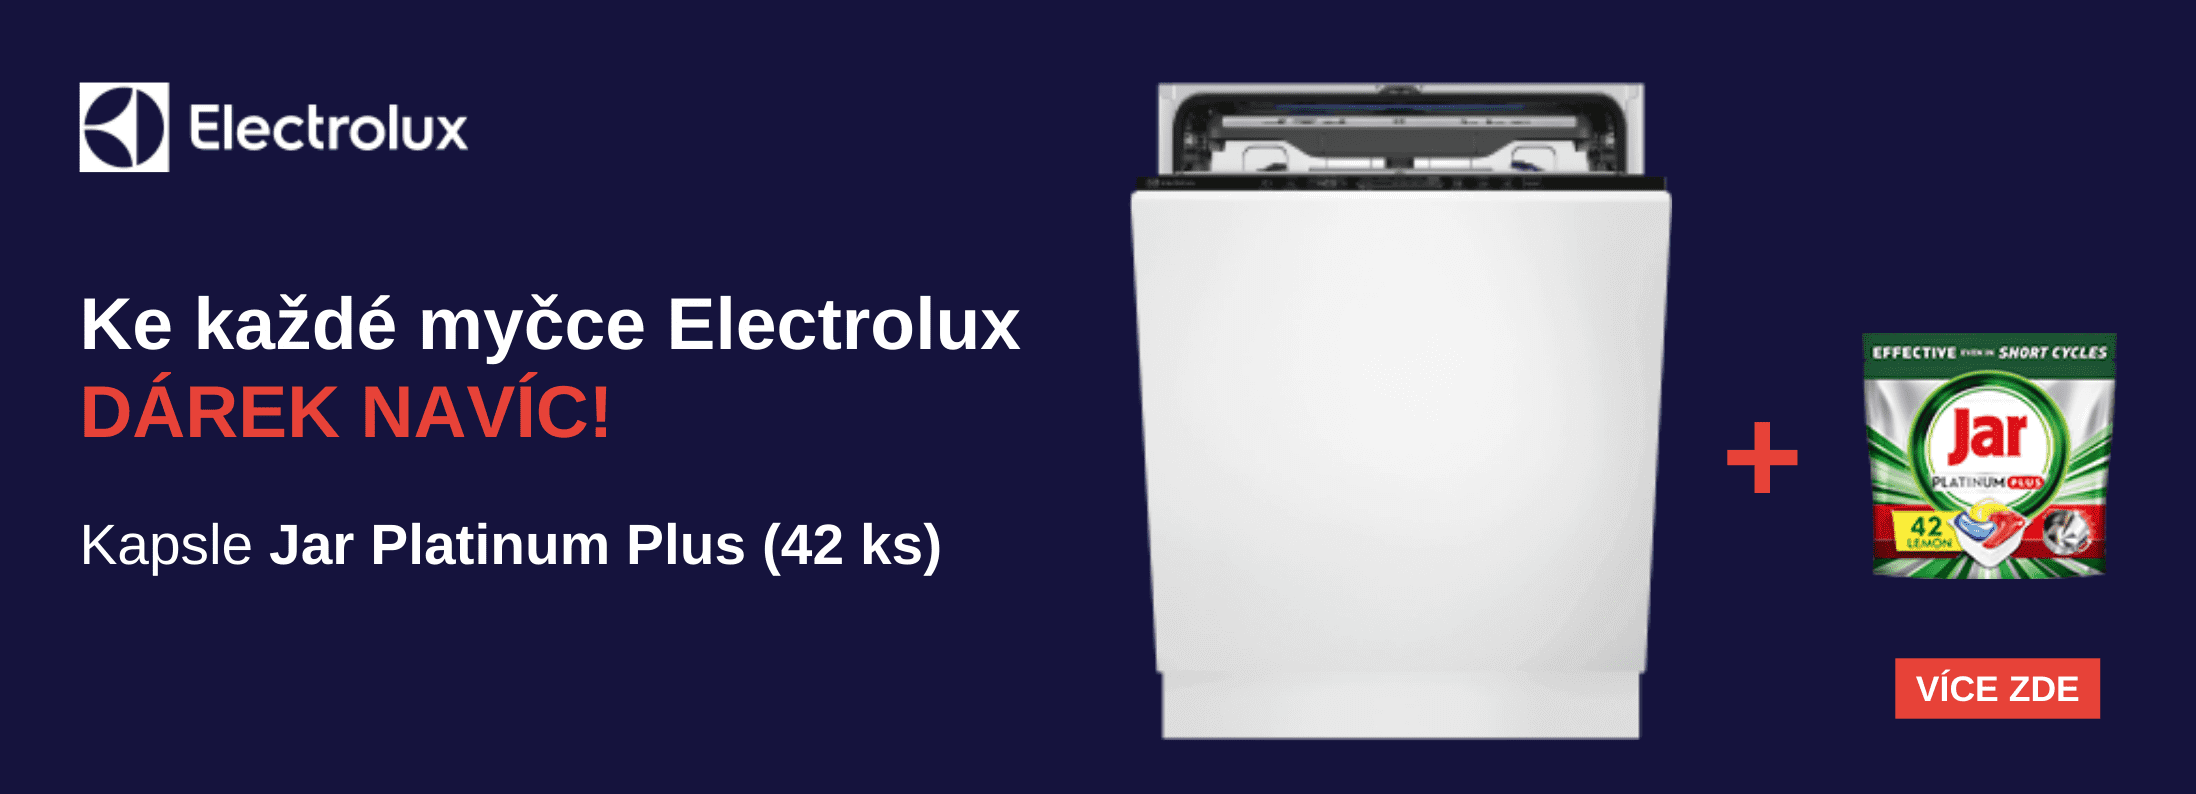 Electrolux - Ke každé myčce Electrolux dárek navíc